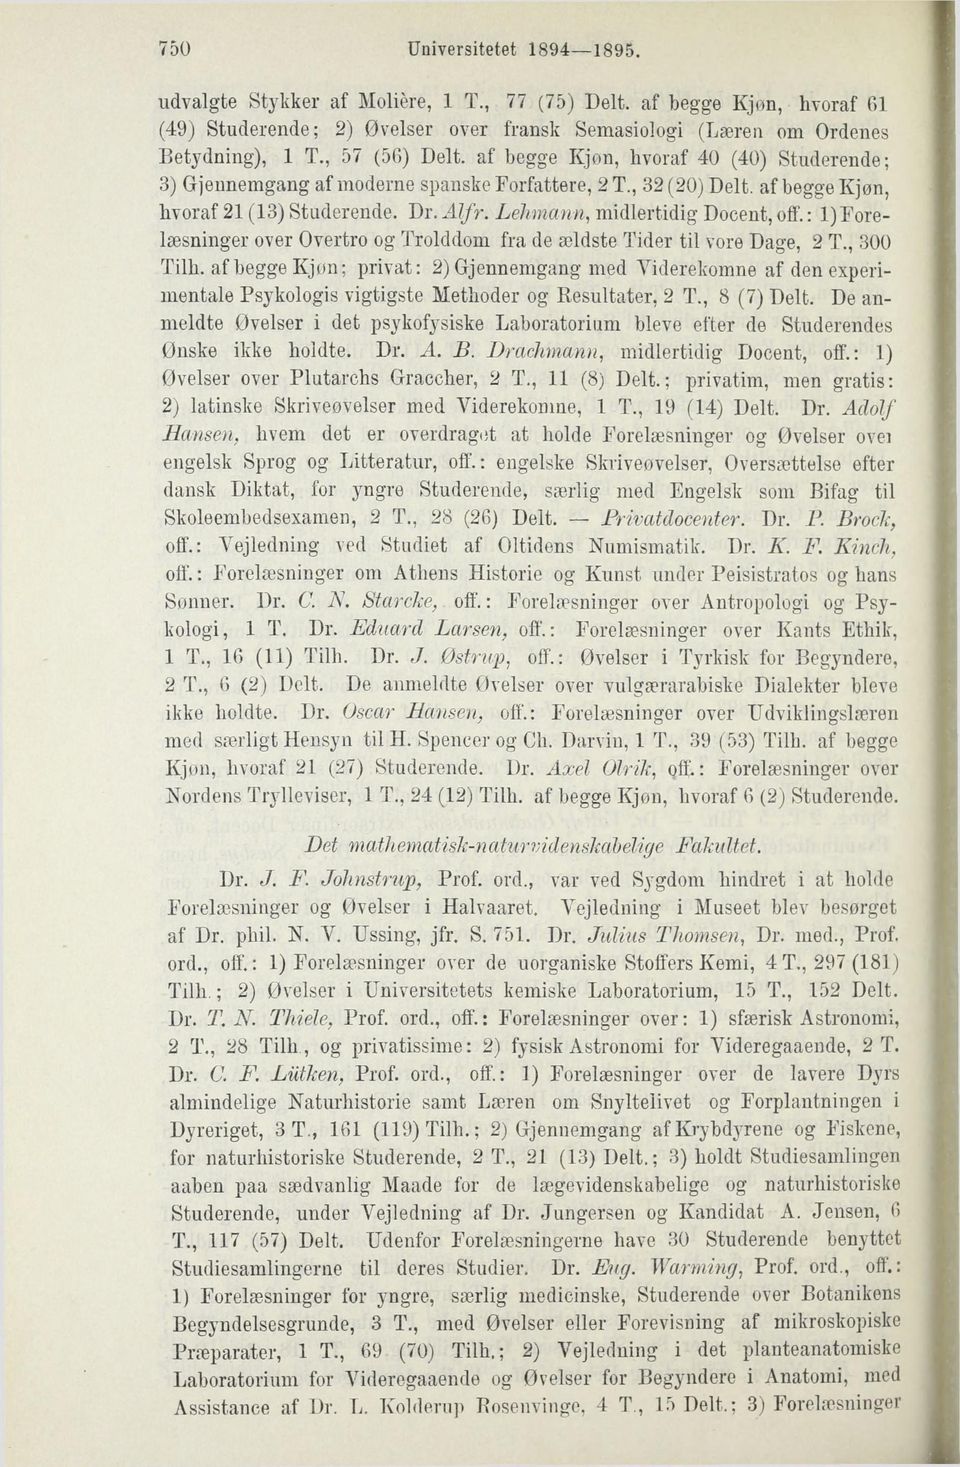 Lehmann, midlertidig Docent, off.: 1) Forelæsninger over Overtro og Trolddom fra de ældste Tider til vore Dage, 2 T., 300 Tilh.